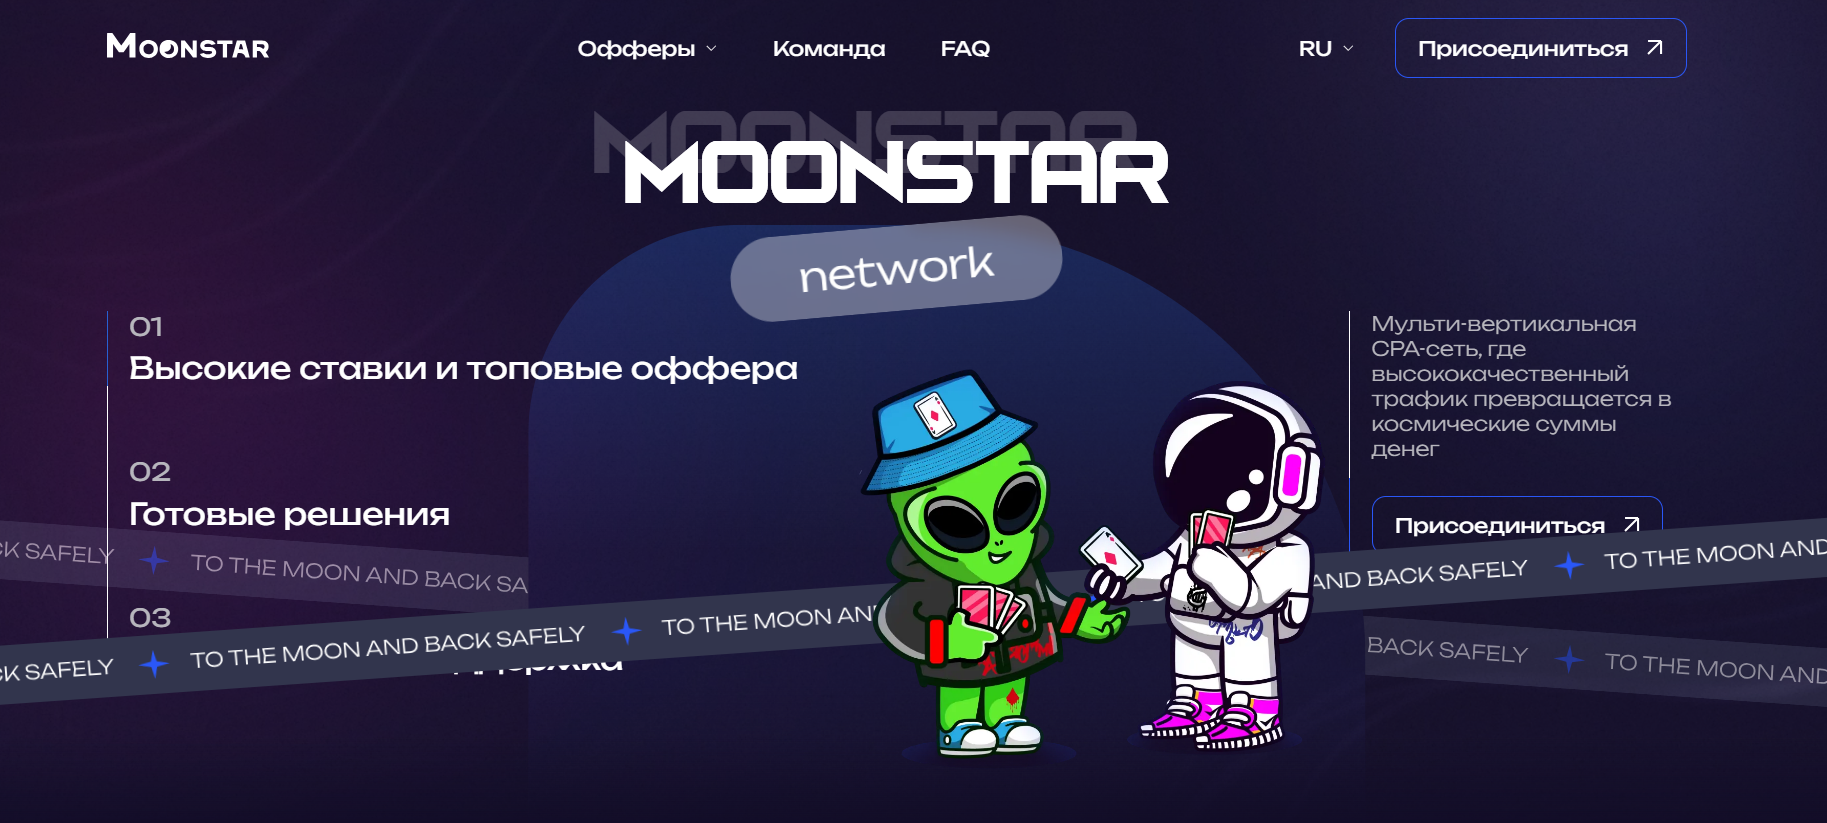 Moonstar: отзывы и обзор партнерской сети